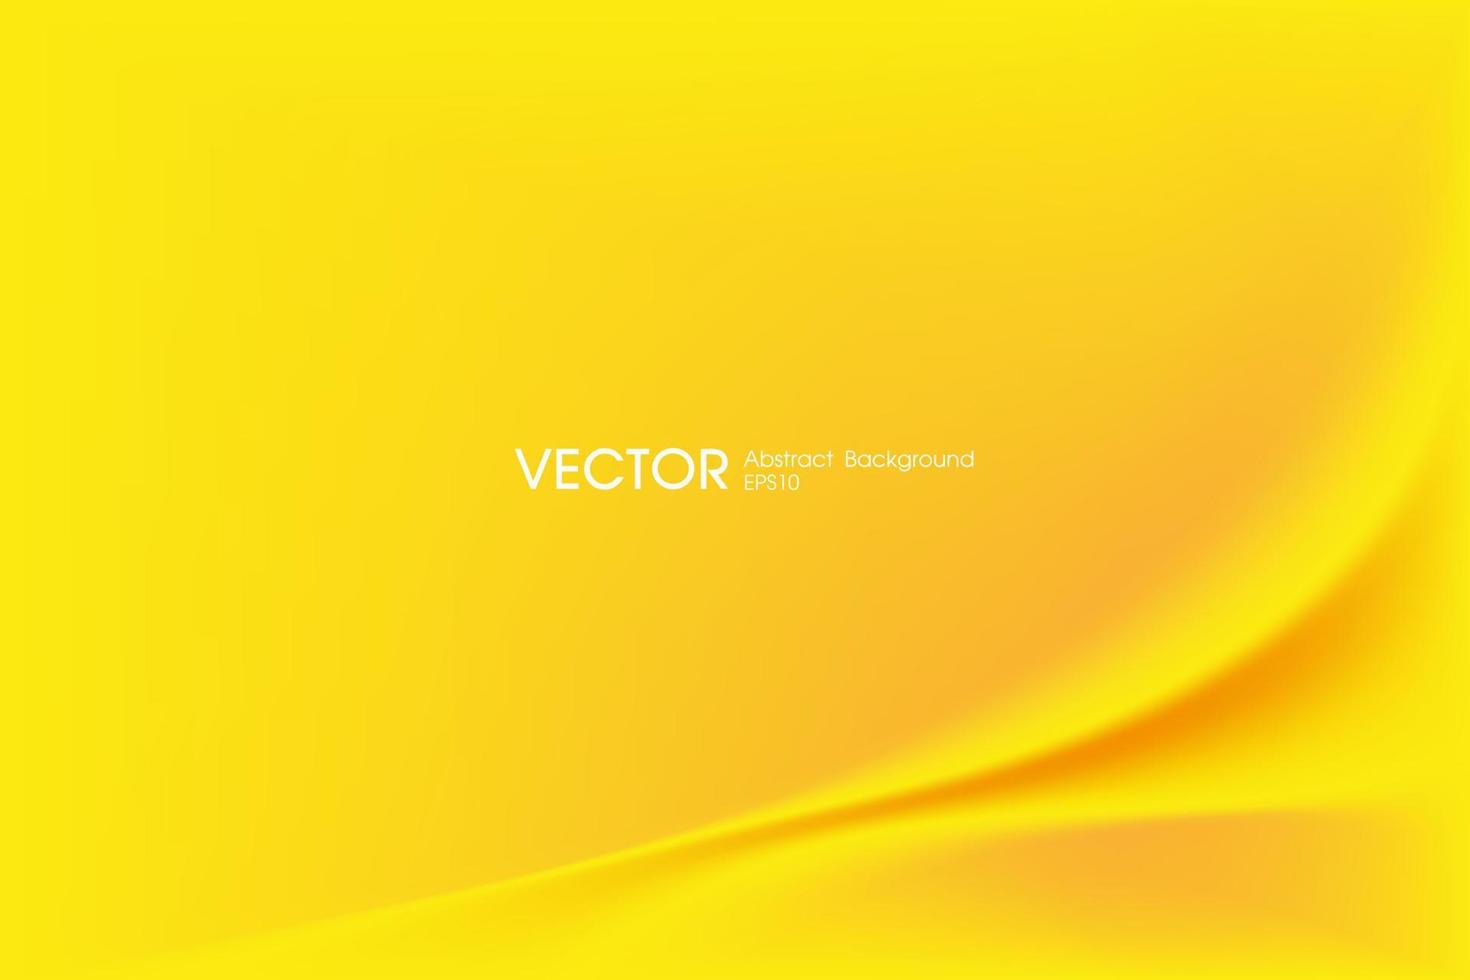 abstrakter gelber hintergrund. unscharfer Hintergrund der Wasserlinie. vektorillustration für designbanner oder poster vektor